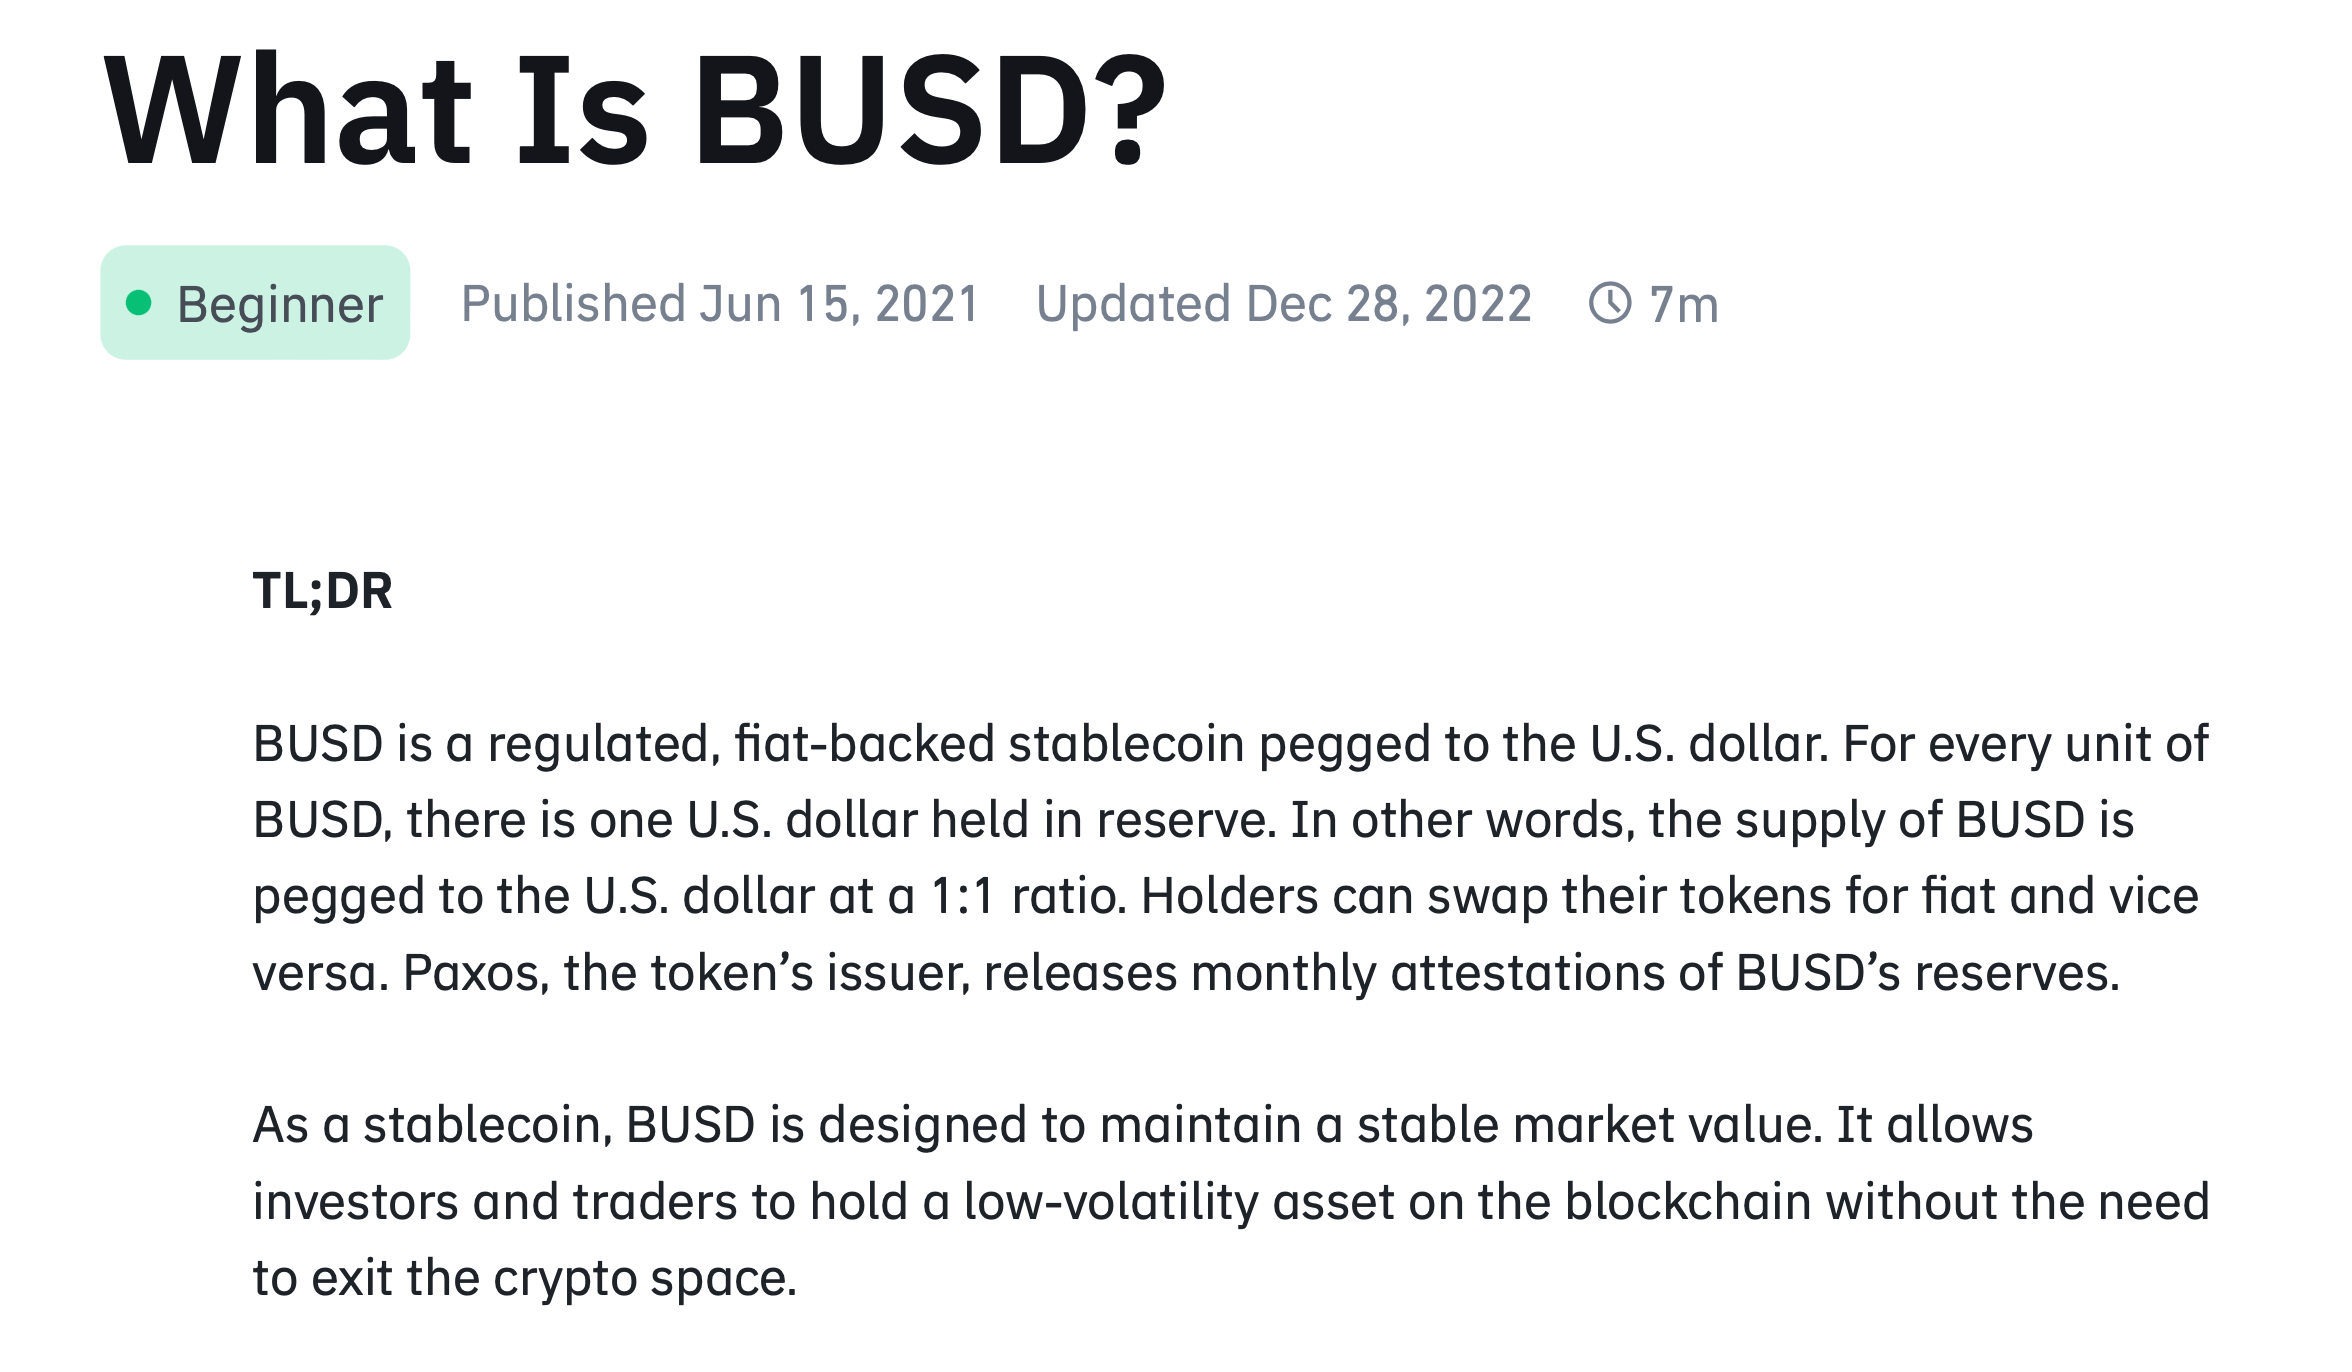 Регуляторы запретили выпуск стейблкоина BUSD от крупнейшей криптобиржи Binance. Что дальше, и кто виноват? Статья о BUSD на сайте Binance Academy. Фото.